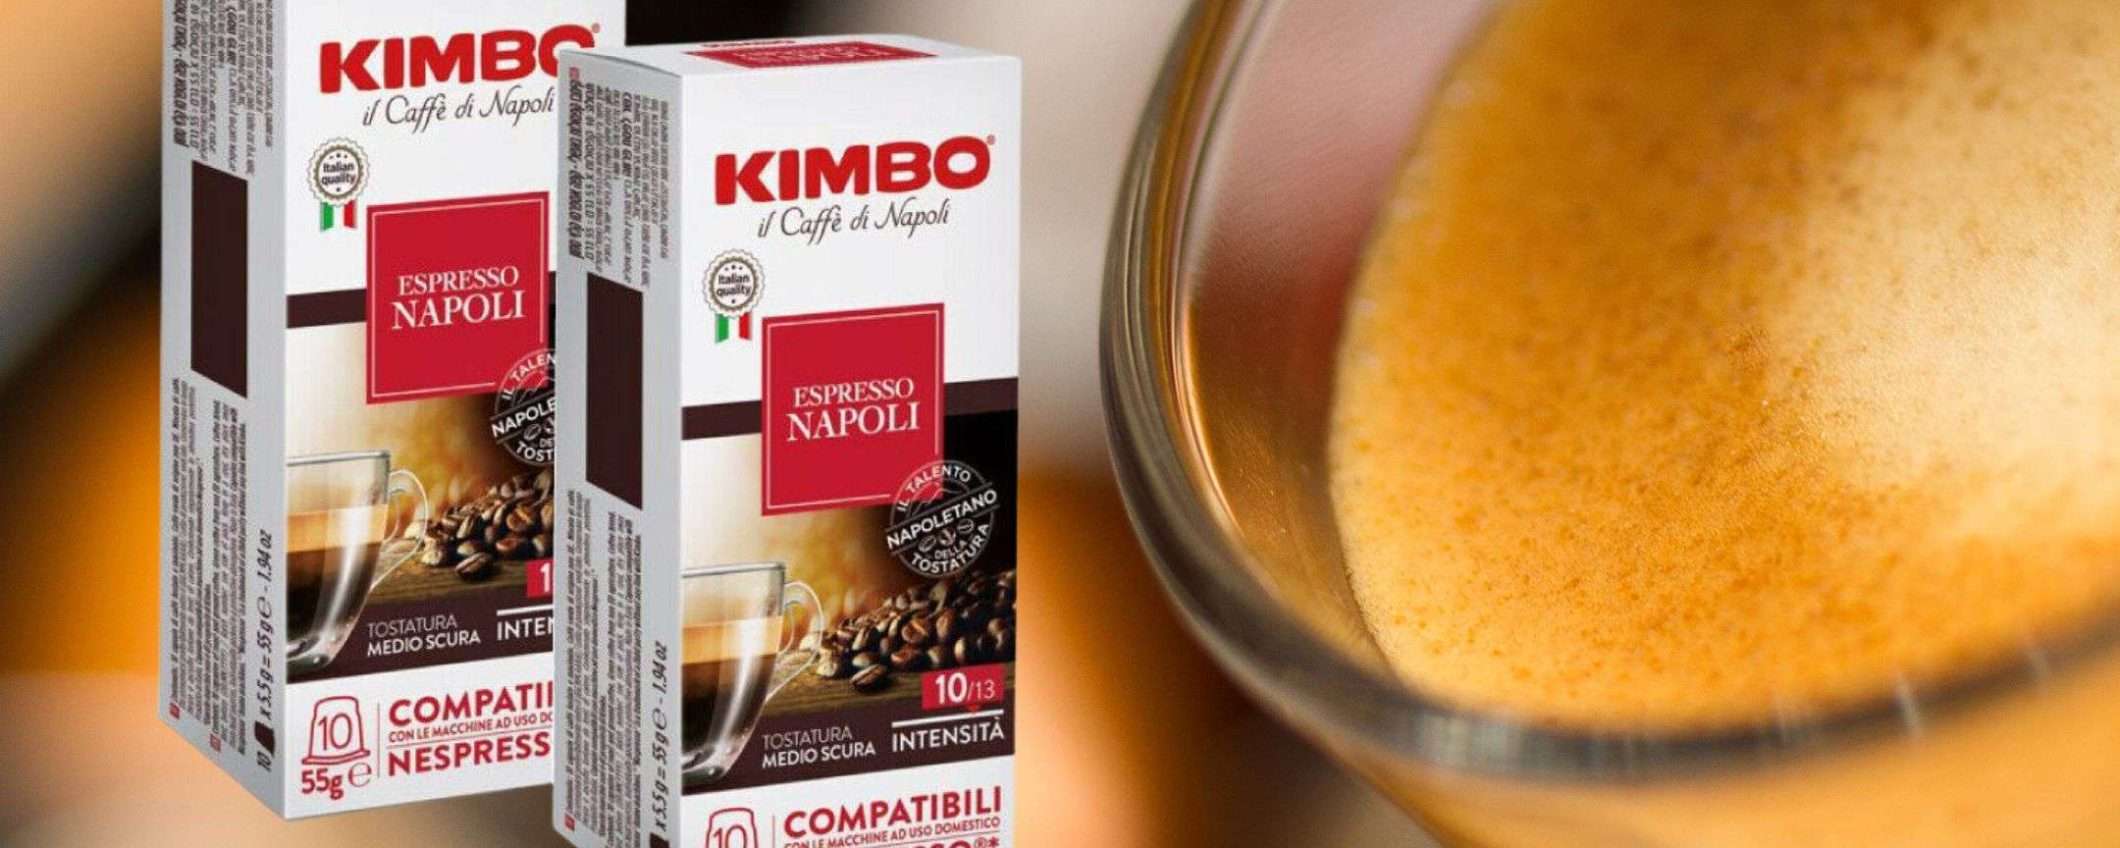 Capsule Kimbo miscela Napoli per Nespresso a soli 39€ su eBay